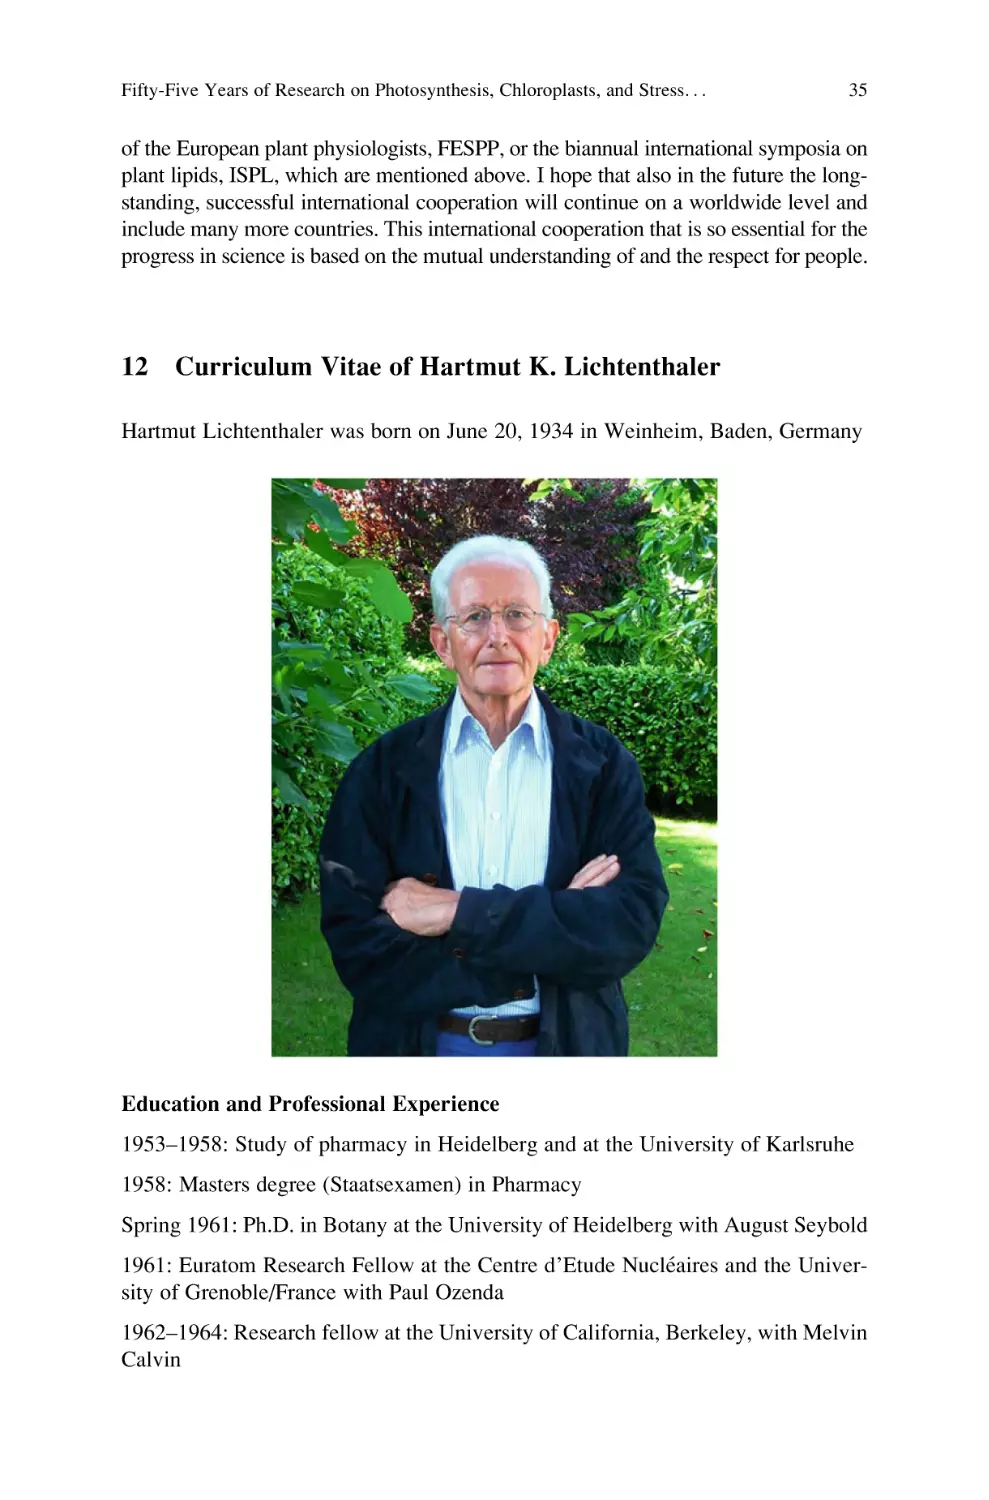 12 Curriculum Vitae of Hartmut K. Lichtenthaler